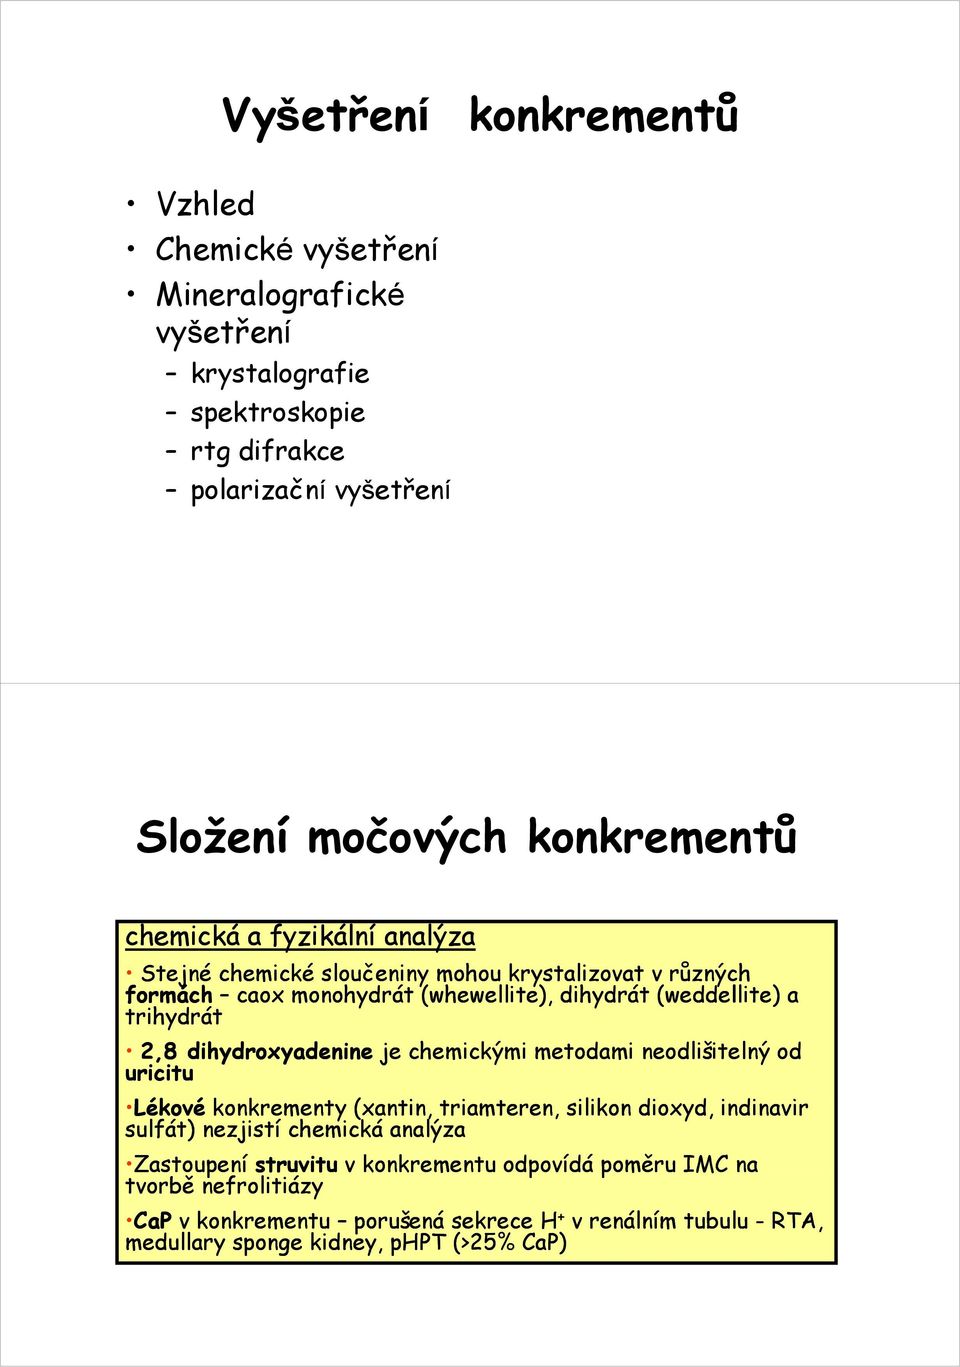 dihydroxyadenine je chemickými metodami neodlišitelný od uricitu Lékové é konkrementy k (xantin, triamteren, t silikon dioxyd, d indinavir i sulfát) nezjistí chemická